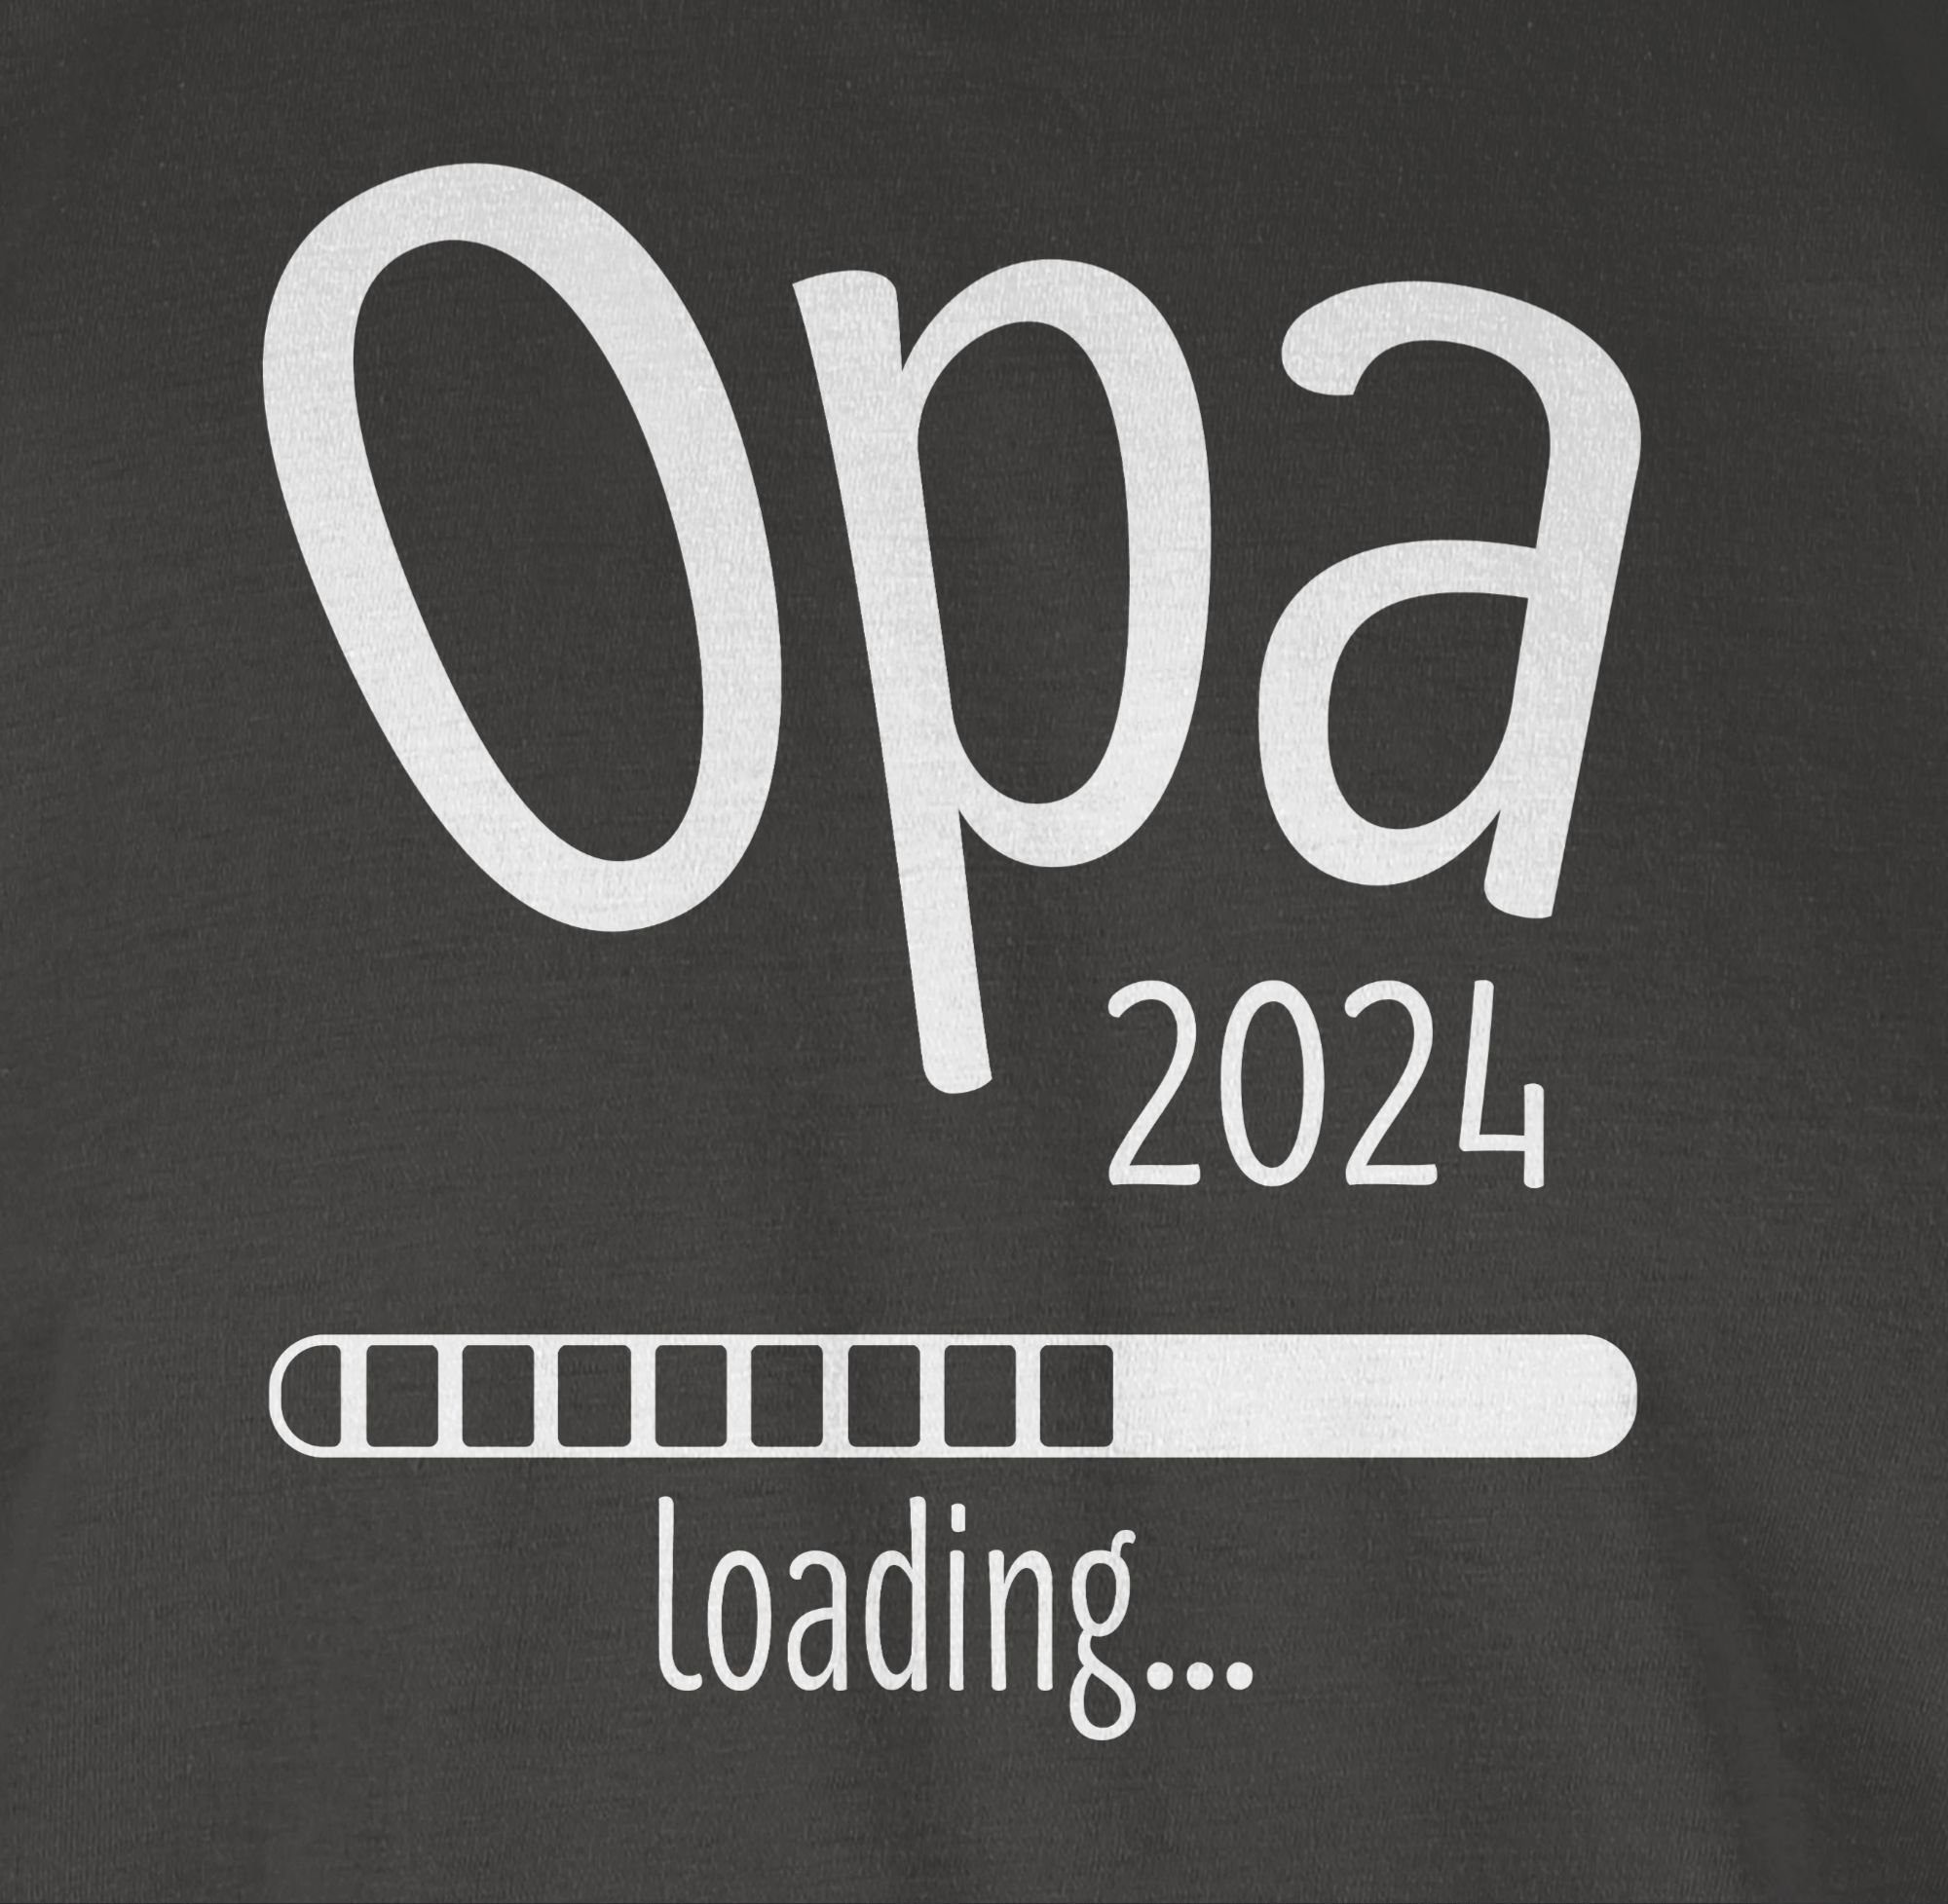 T-Shirt Opa Opa Shirtracer loading Geschenke Dunkelgrau 2024 3